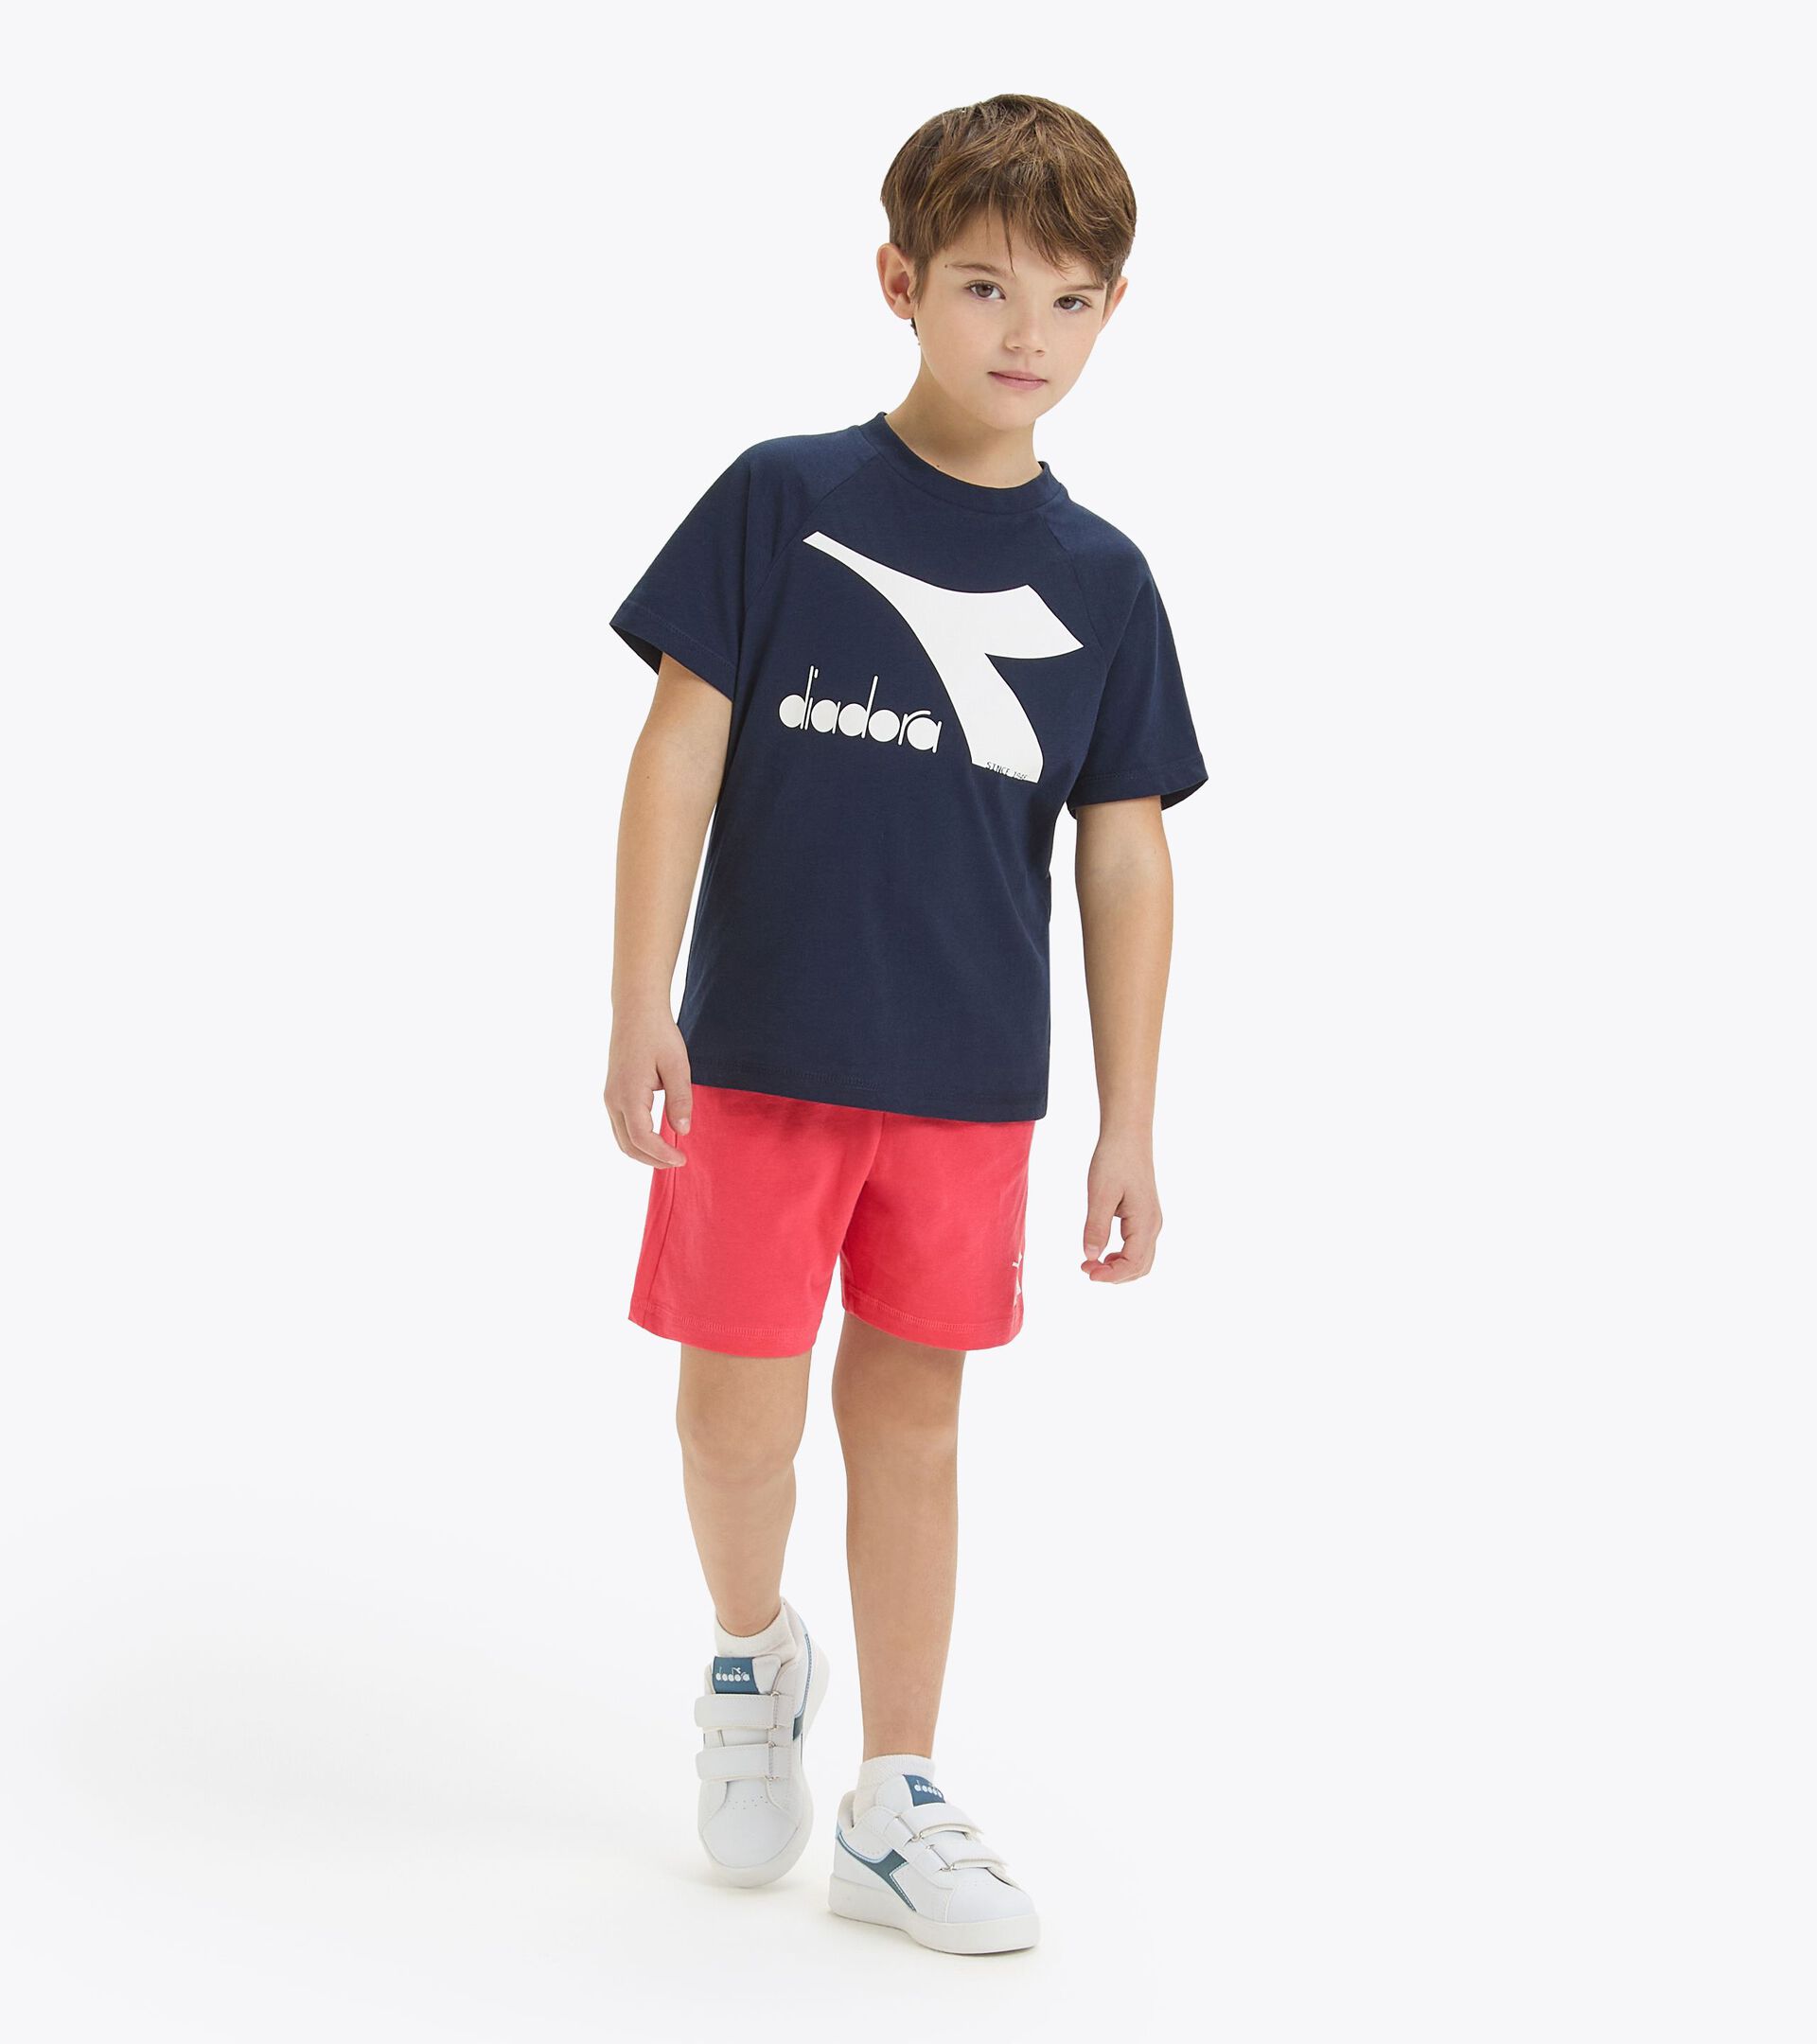 Conjunto deportivo - Camiseta y pantalones cortos - Unisex - Niños/niñas y adolescentes JU. SET SS CORE AZUL CHAQUETON - Diadora